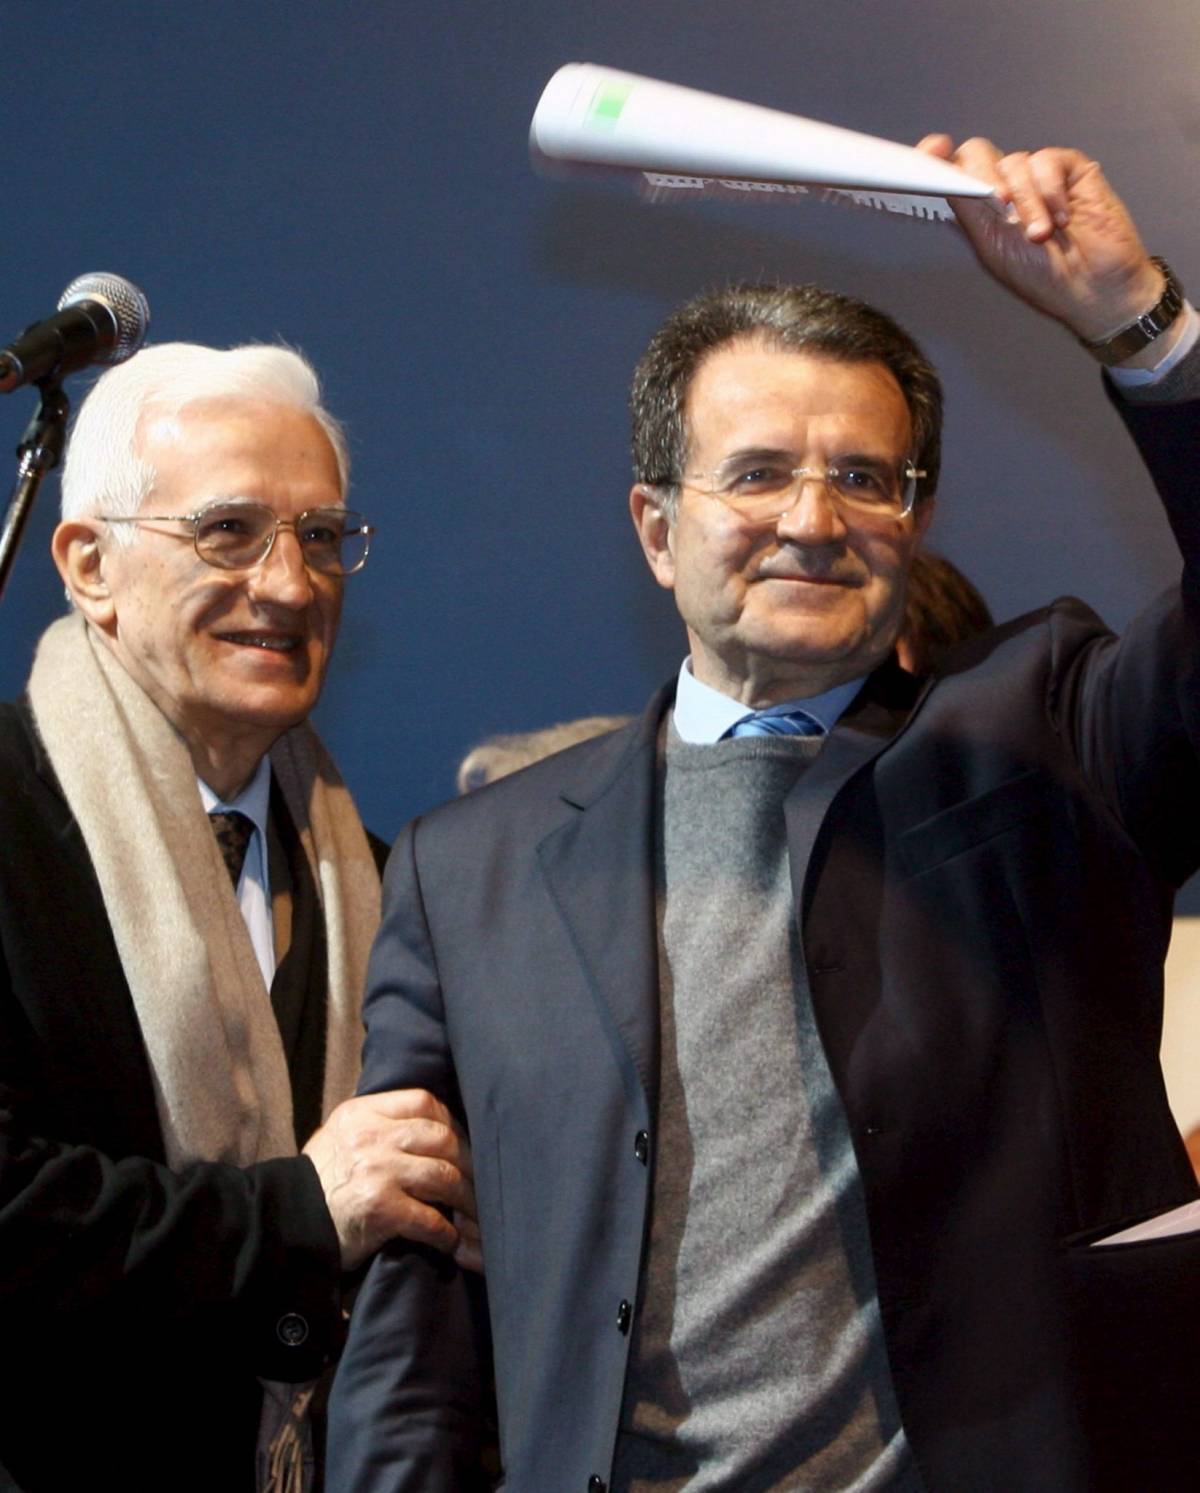 Italia senza coraggio per il caso Prodi nessuno fece niente